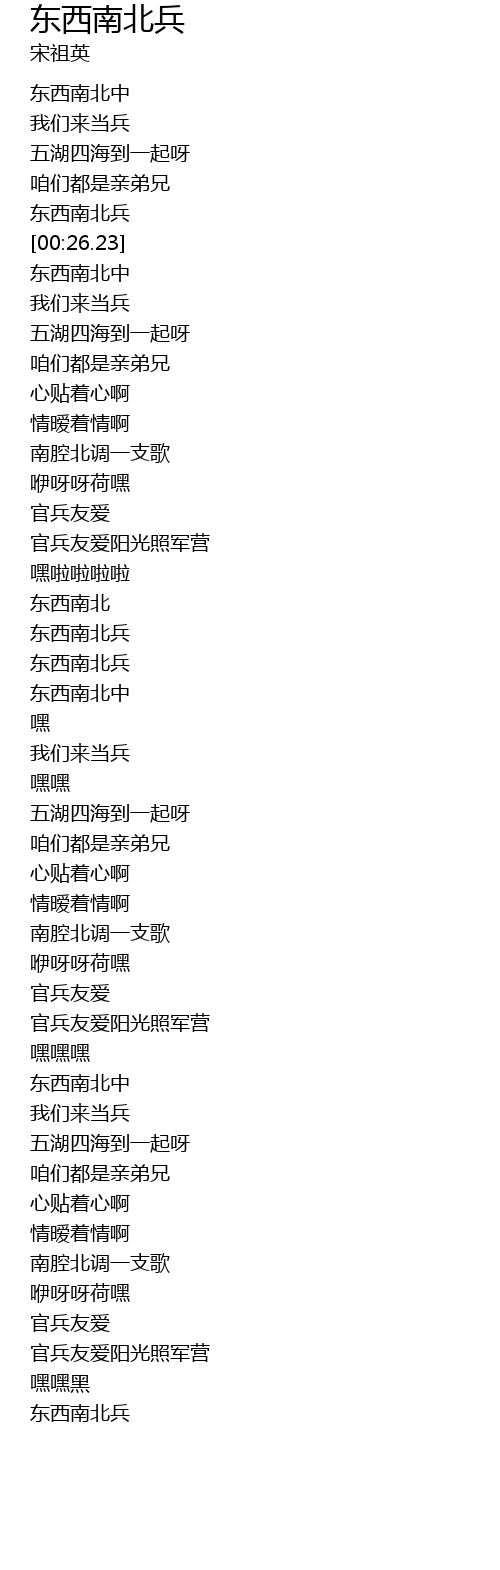 东西南北兵dong Xi Nan Bei Bing Lyrics Follow Lyrics